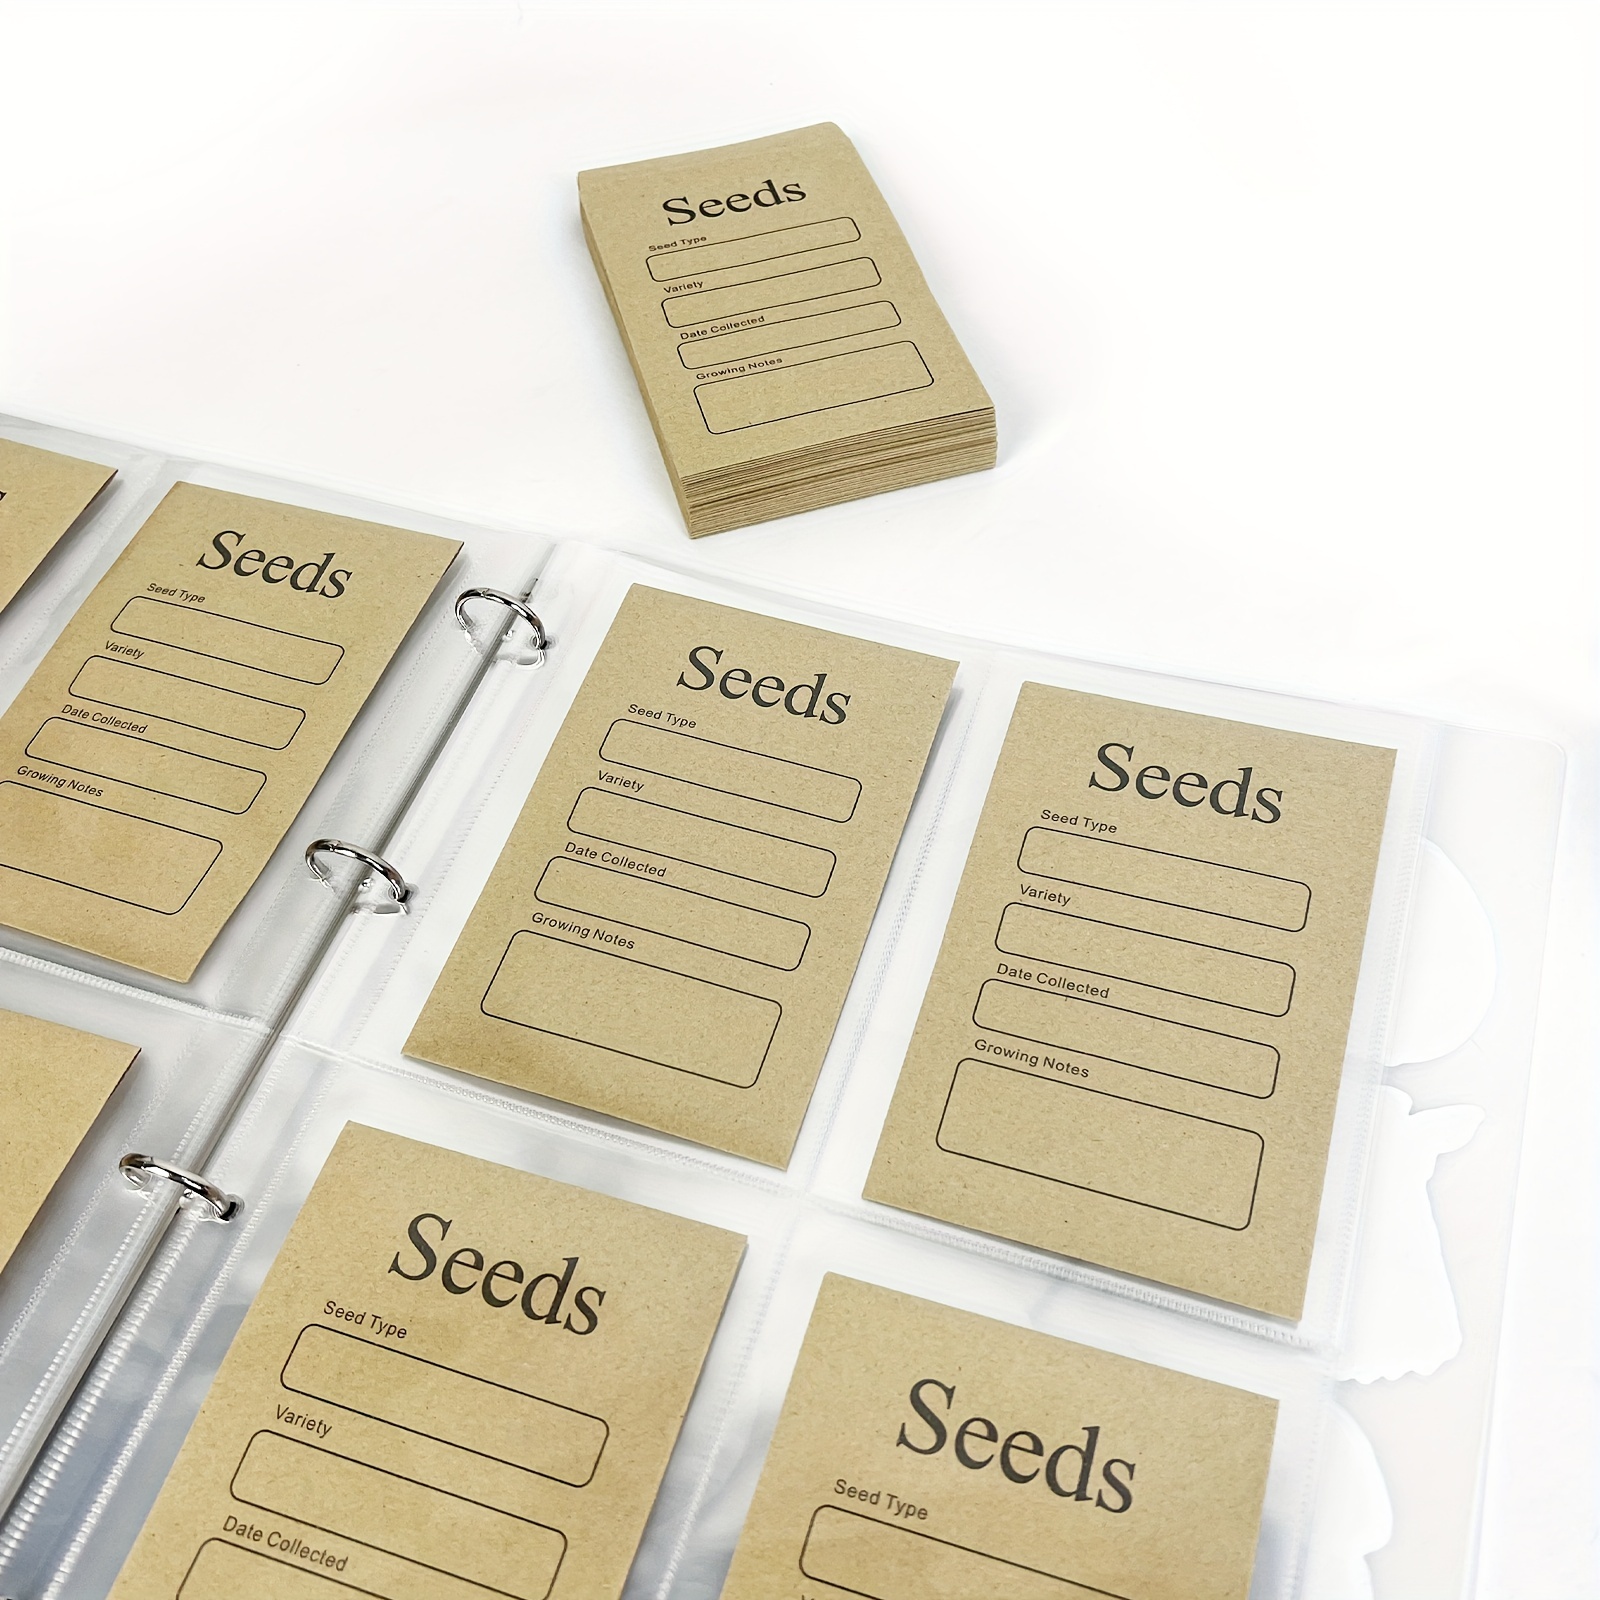 Garden Seed Storage Organizer Binder: 240 Seed Storage Pockets Organization  Binder & 80 Seed Envelopes - Seed Packet Organizer - Seed Keeper - Seed